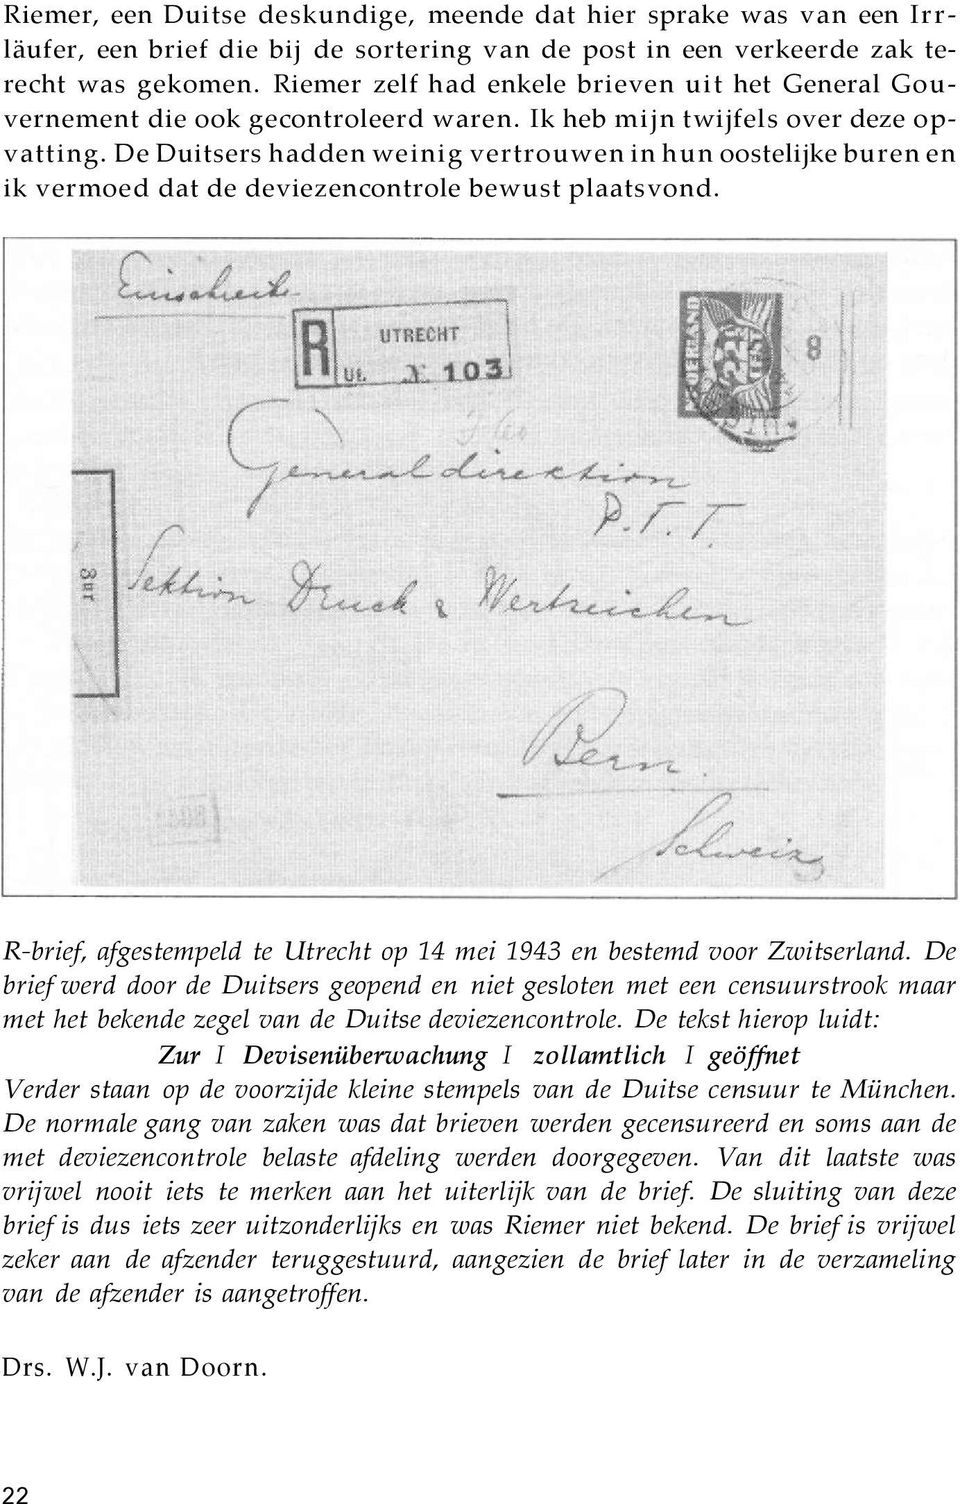 De Duitsers hadden weinig vertrouwen in hun oostelijke buren en ik vermoed dat de deviezencontrole bewust plaatsvond. R-brief, afgestempeld te Utrecht op 14 mei 1943 en bestemd voor Zwitserland.